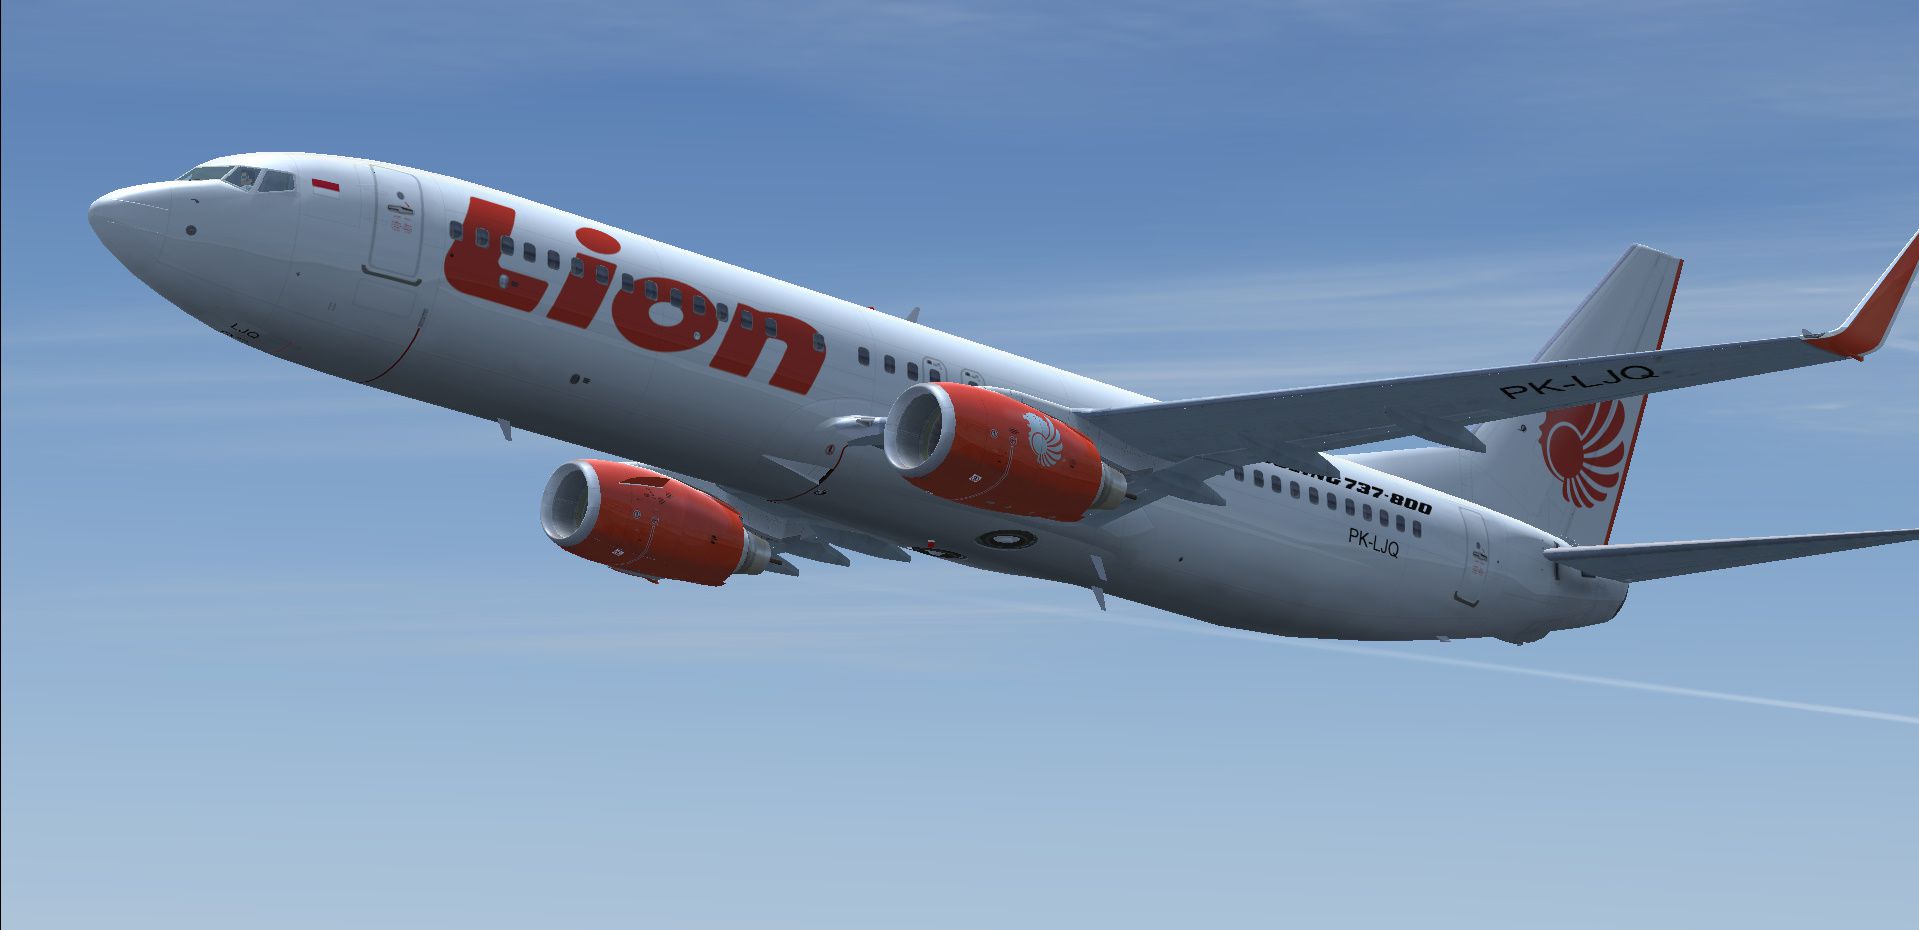 Masih Misterius, 3 Temuan Janggal Pasca Jatuhnya Lion Air JT 610